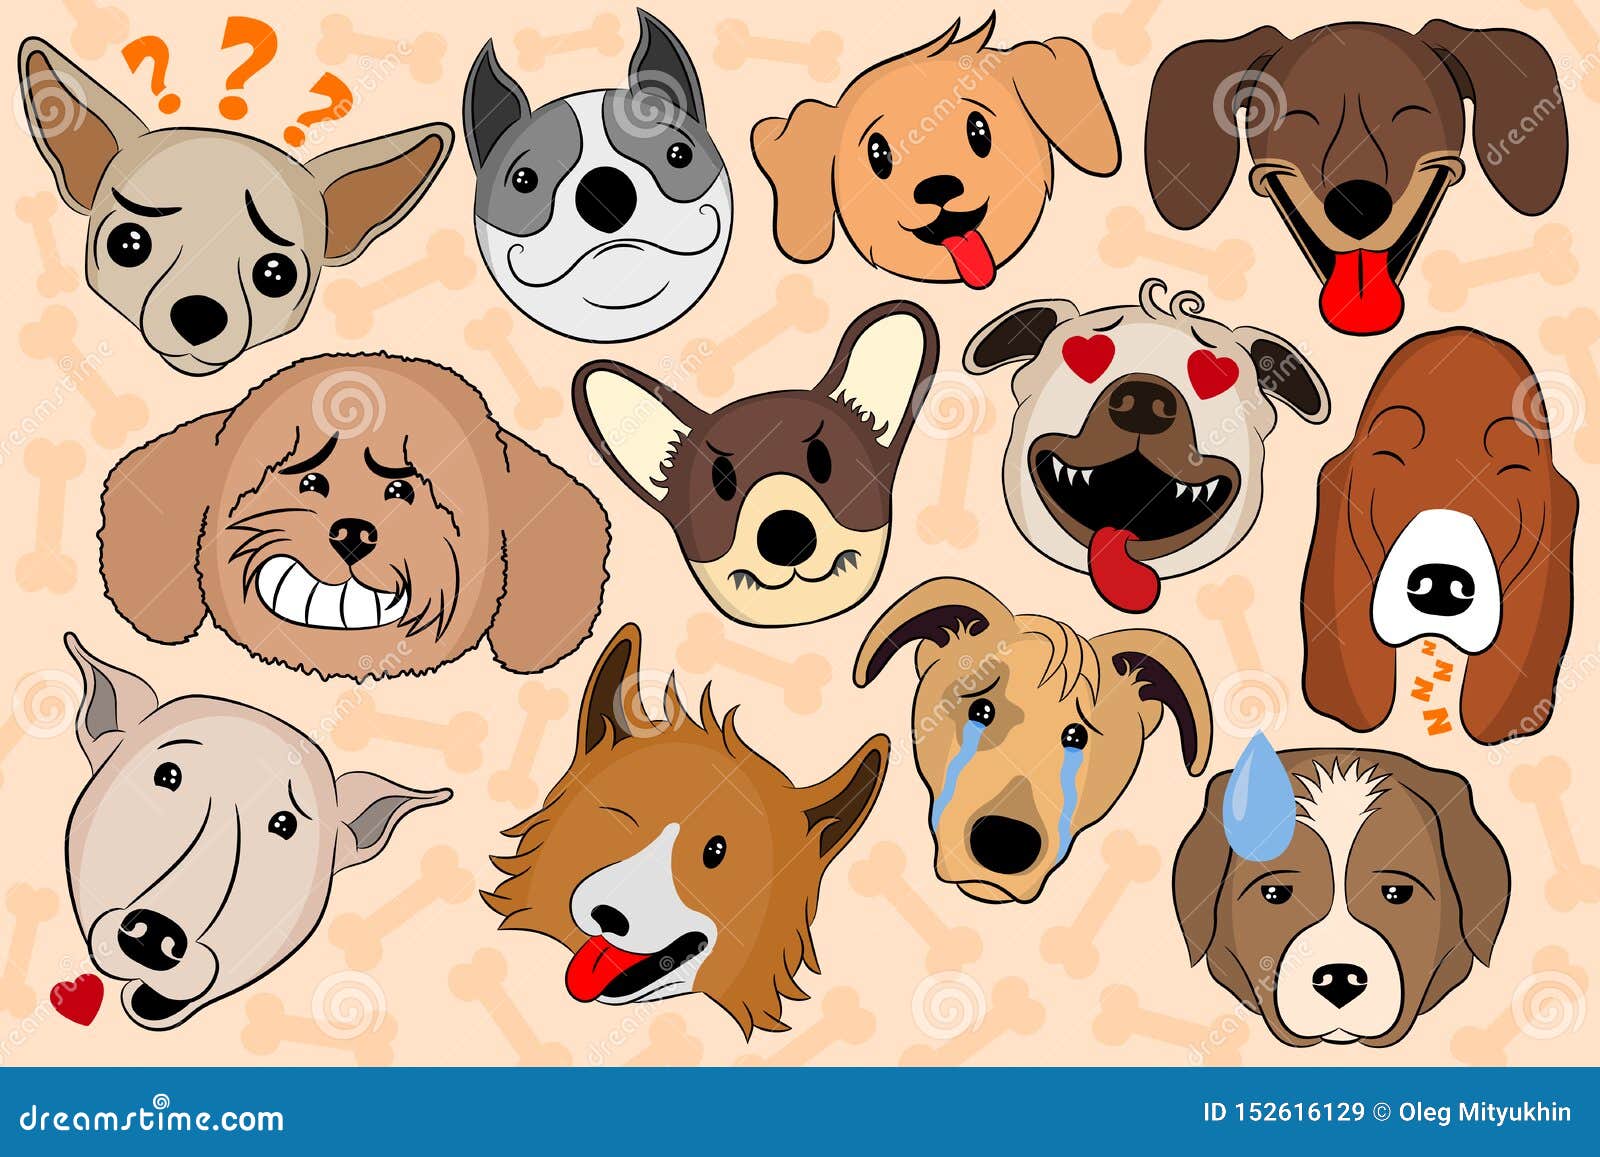 Cartoon Dog Facial Expressions Stock Illustrations – 79 Cartoon Dog Facial  Expressions Stock Illustrations, Vectors & Clipart - Dreamstime